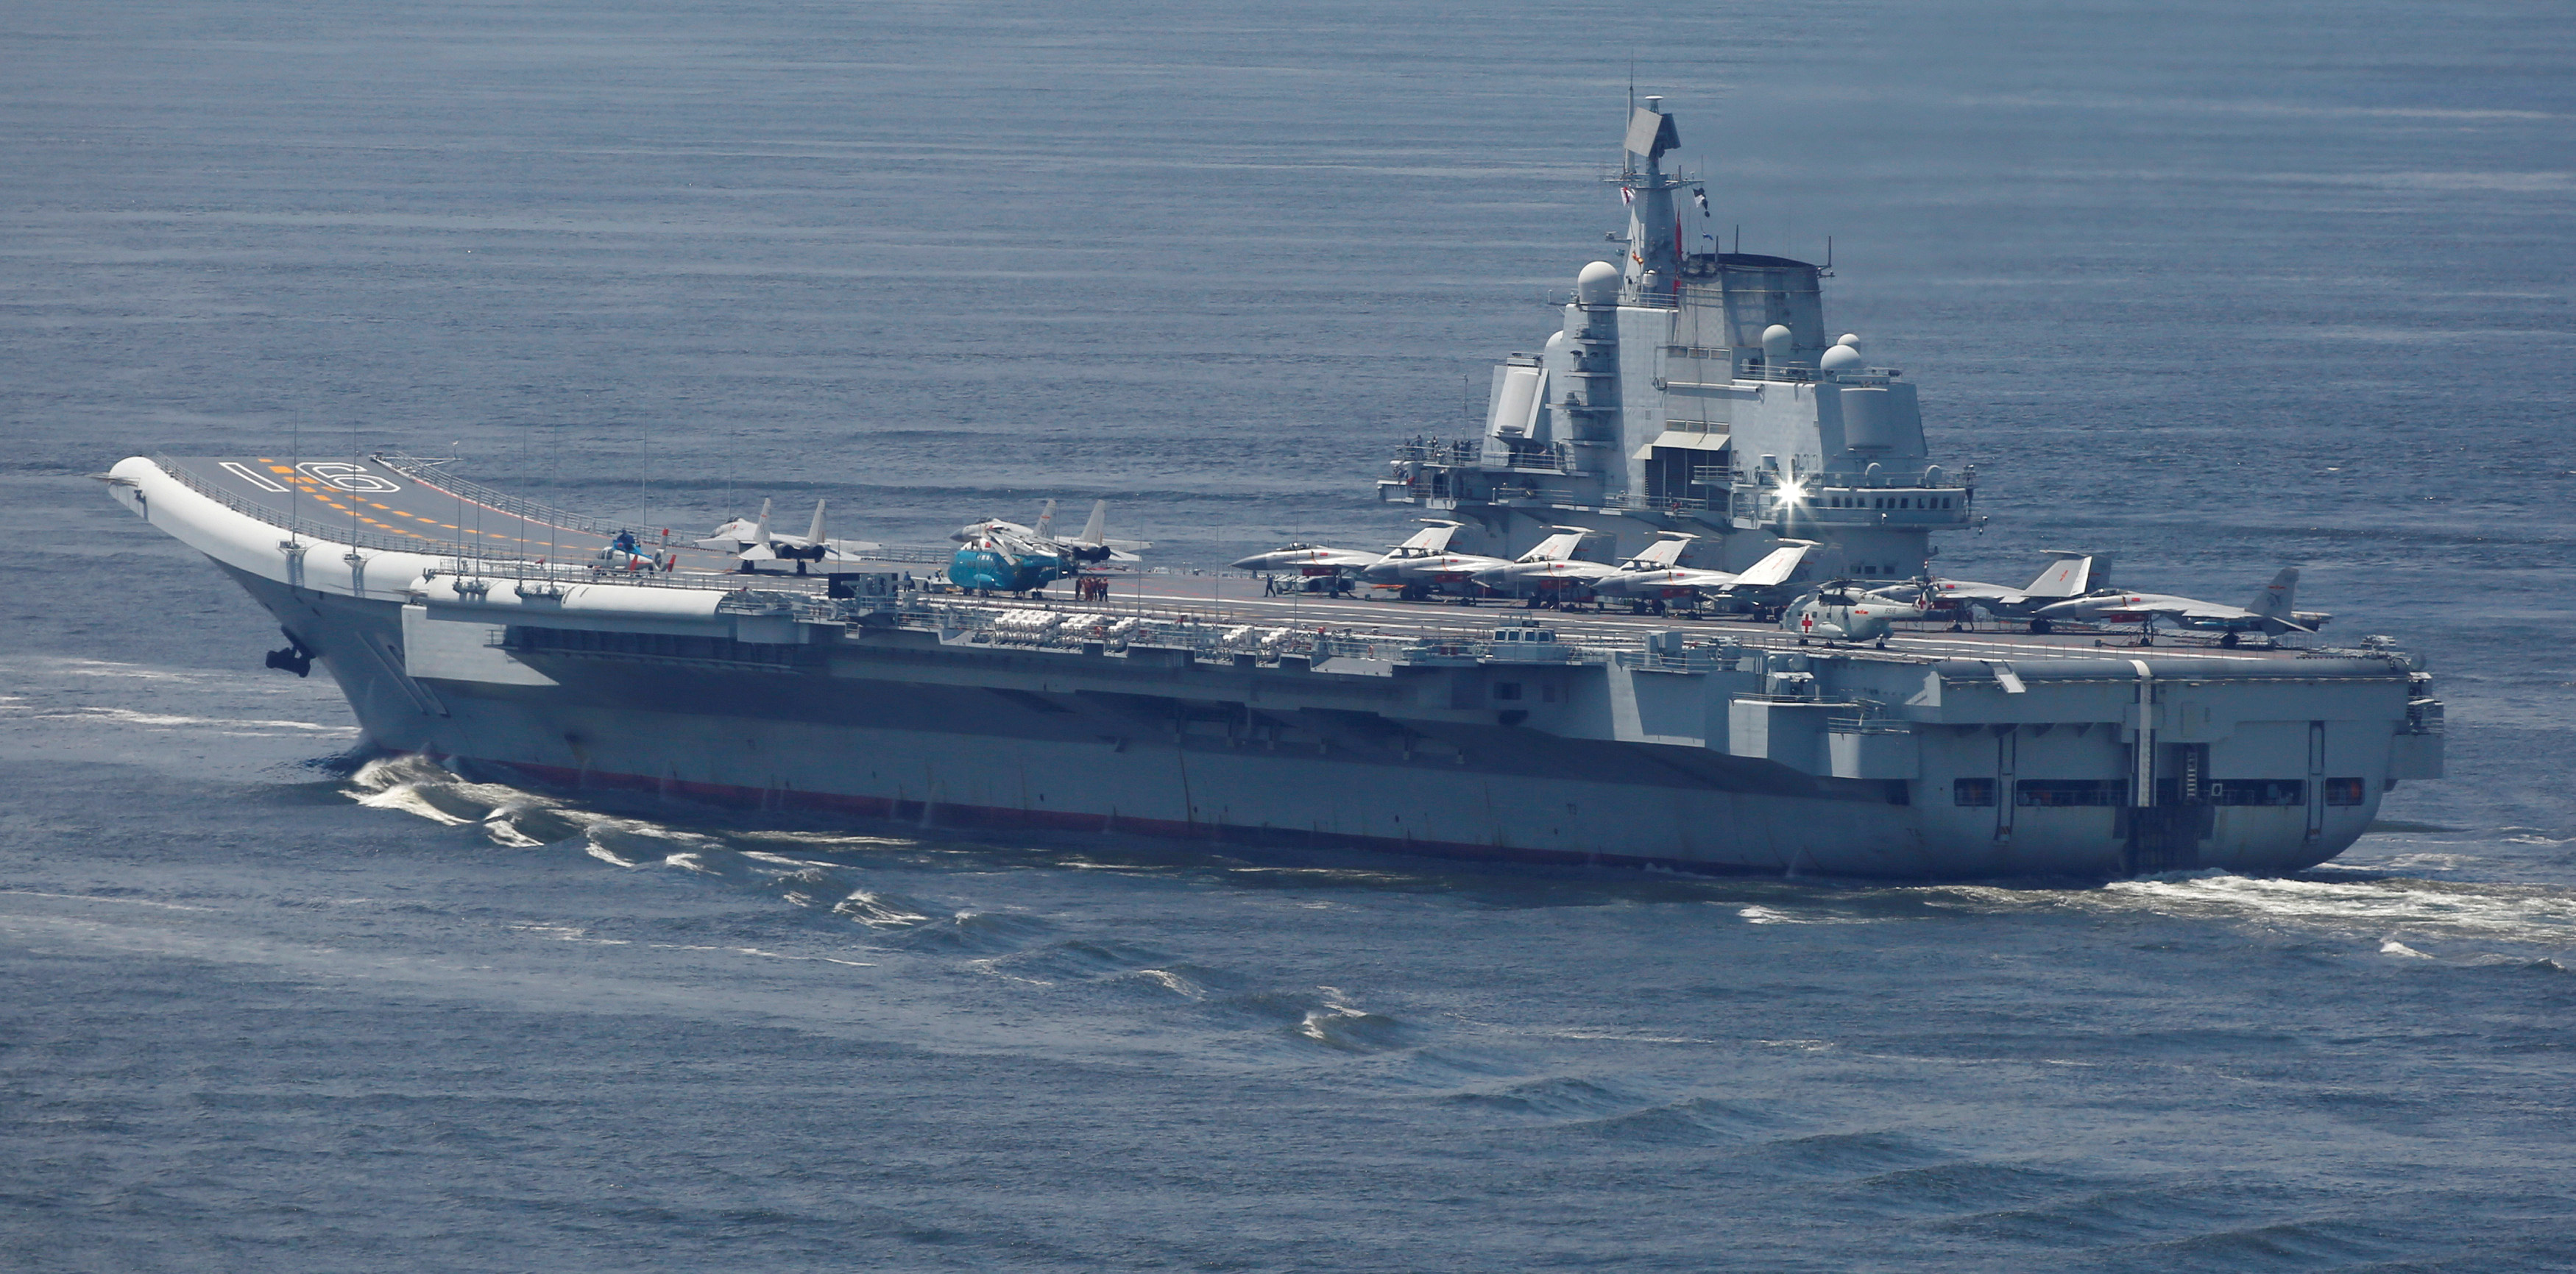 China's aircraft carrier Liaoning departs Hong Kong